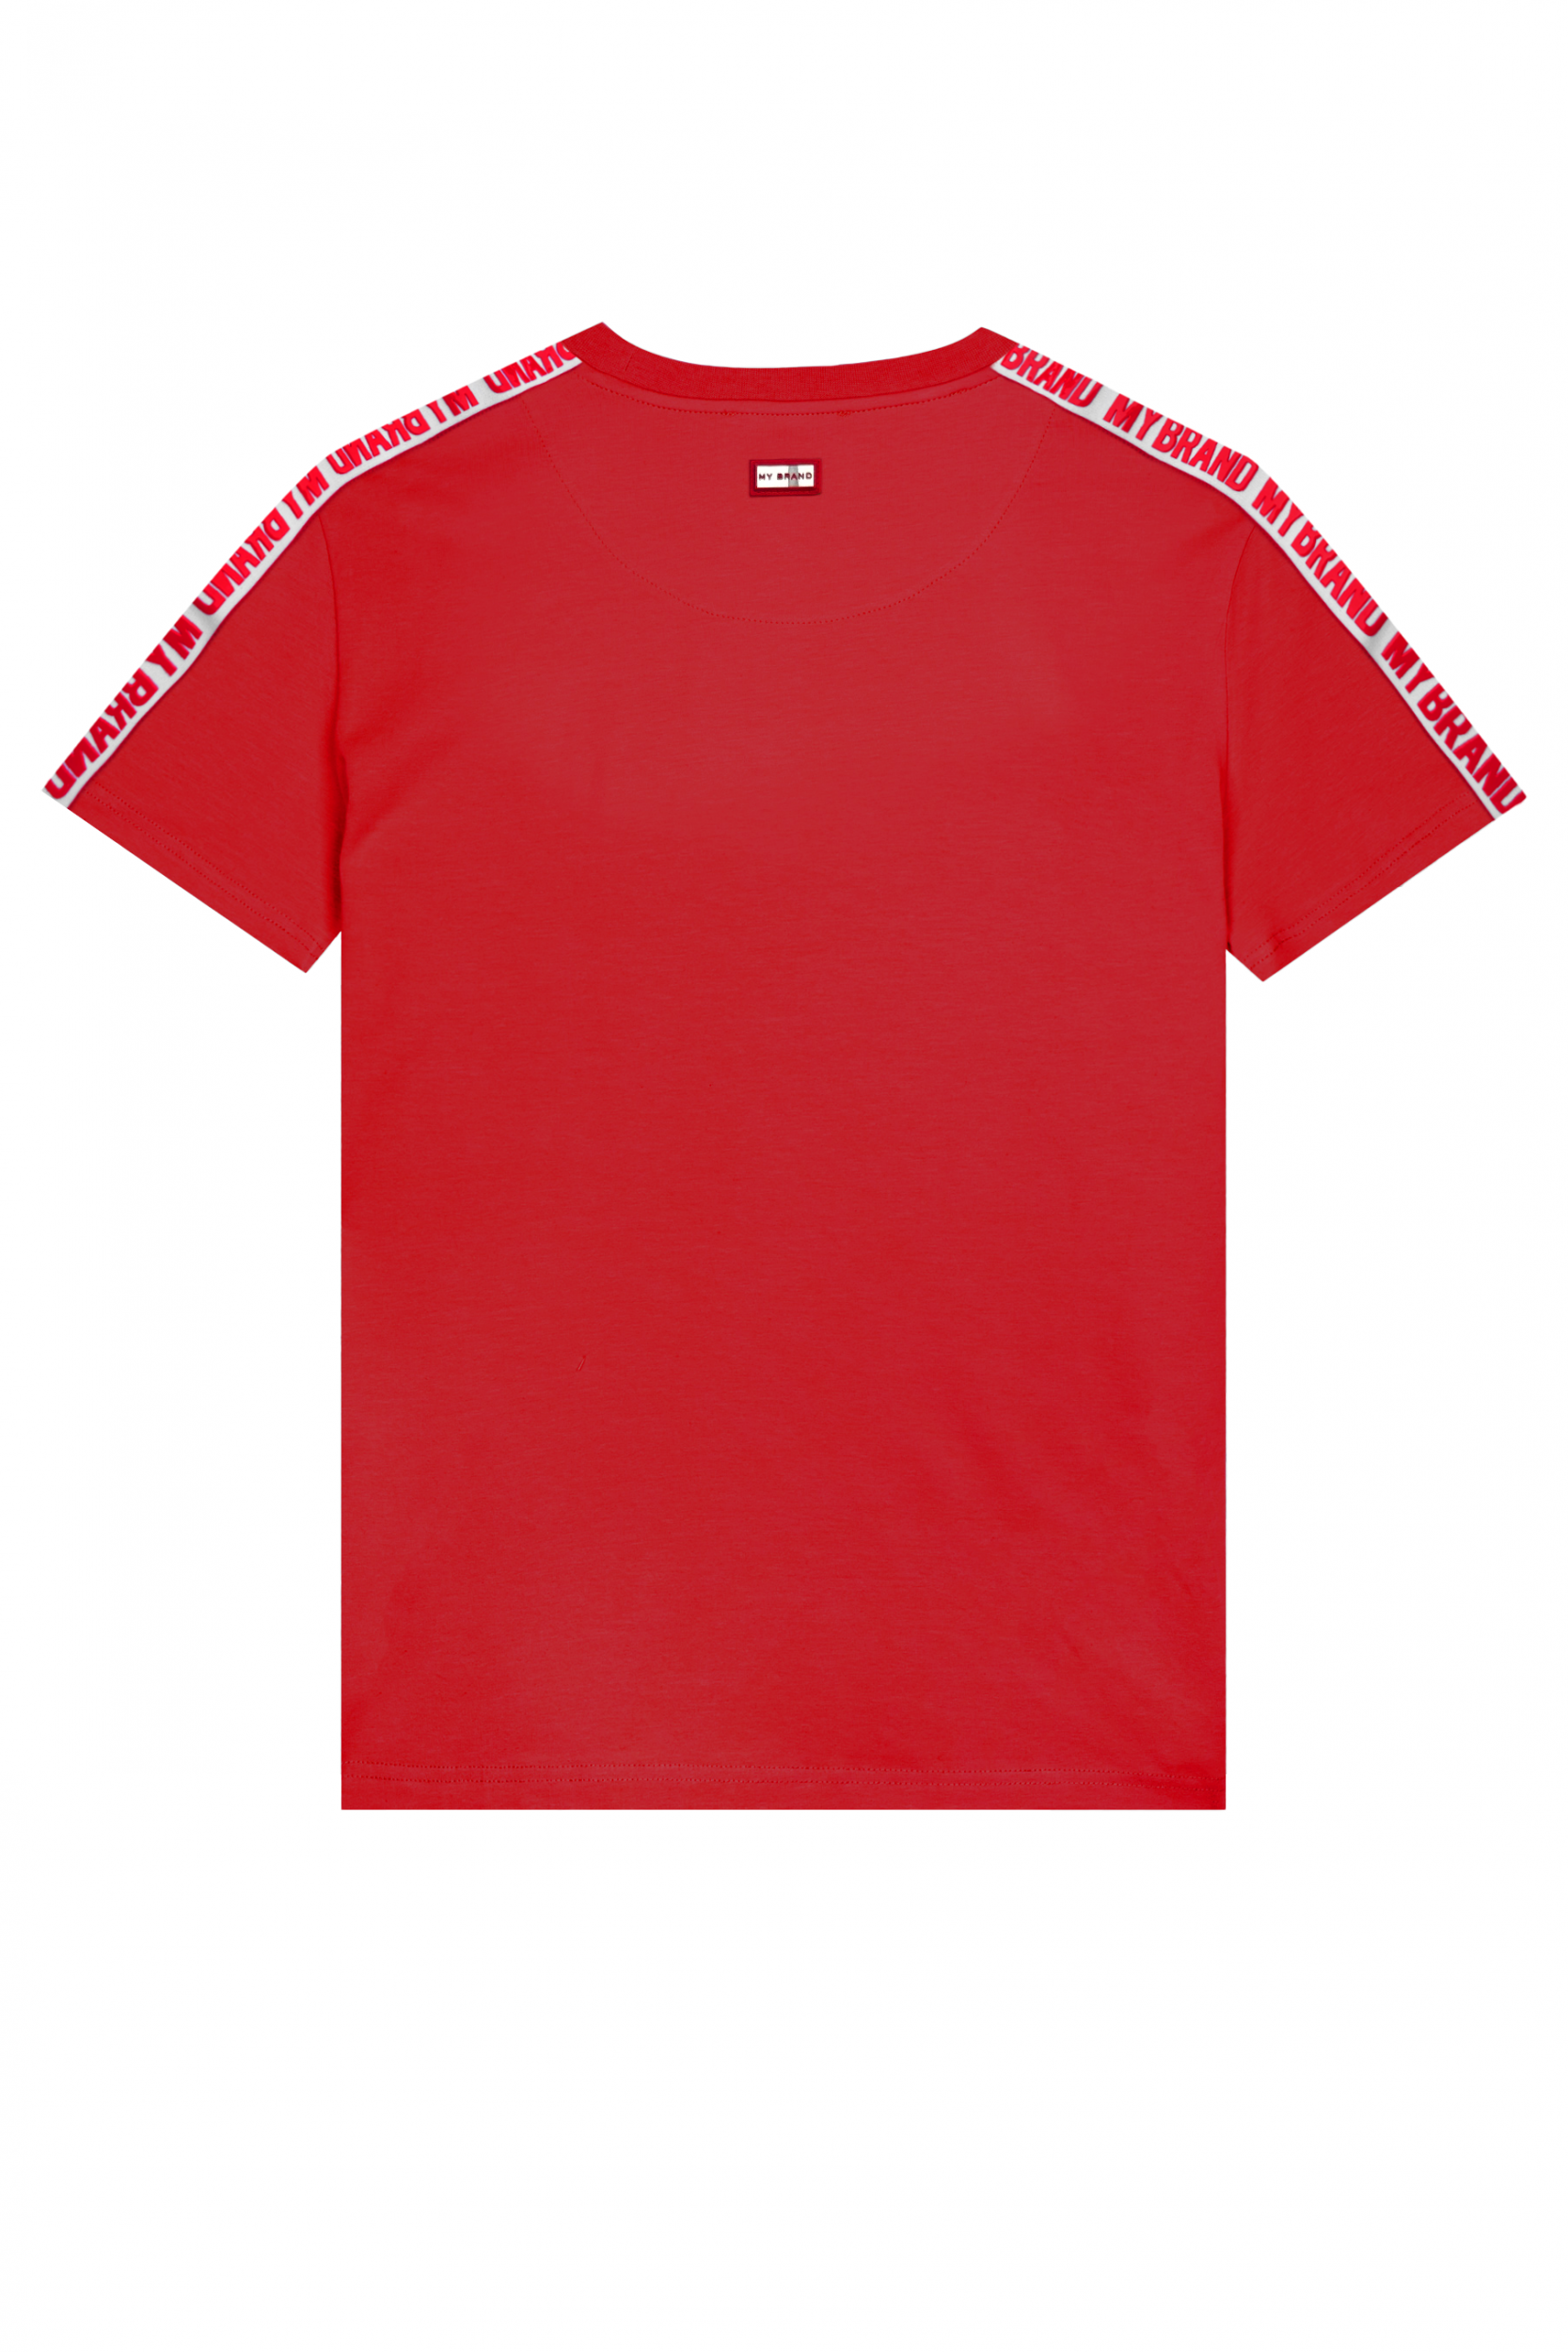 MB Logo Taping Shirt Red | RED